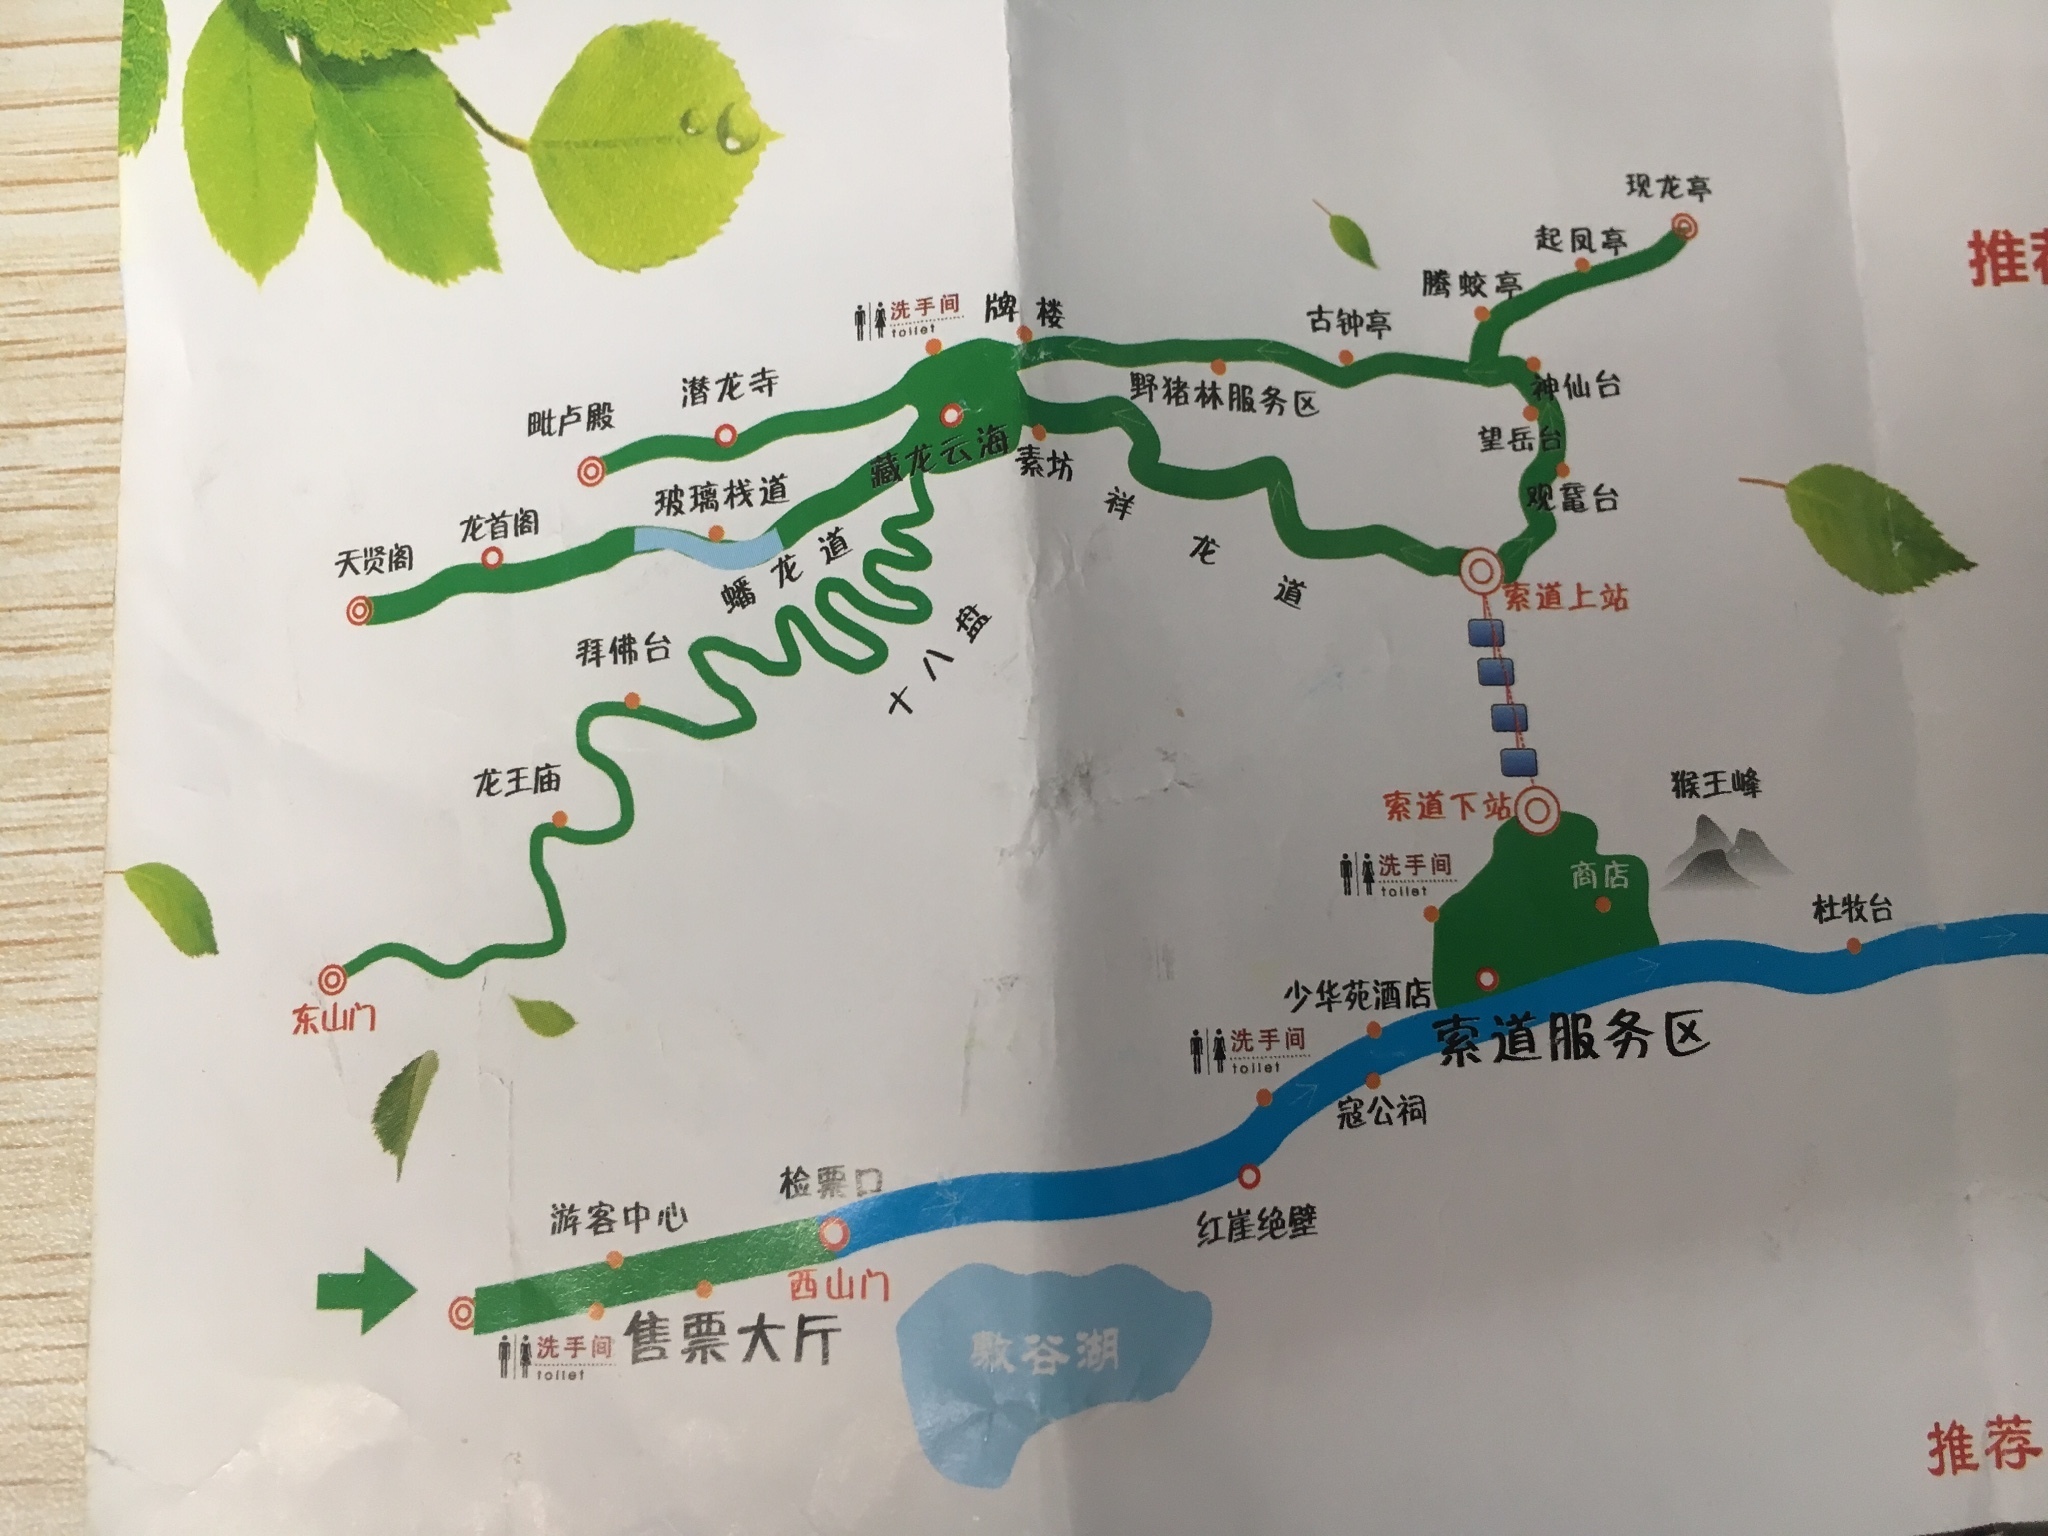 9.22 少华山国家森林公园 半日游(上)